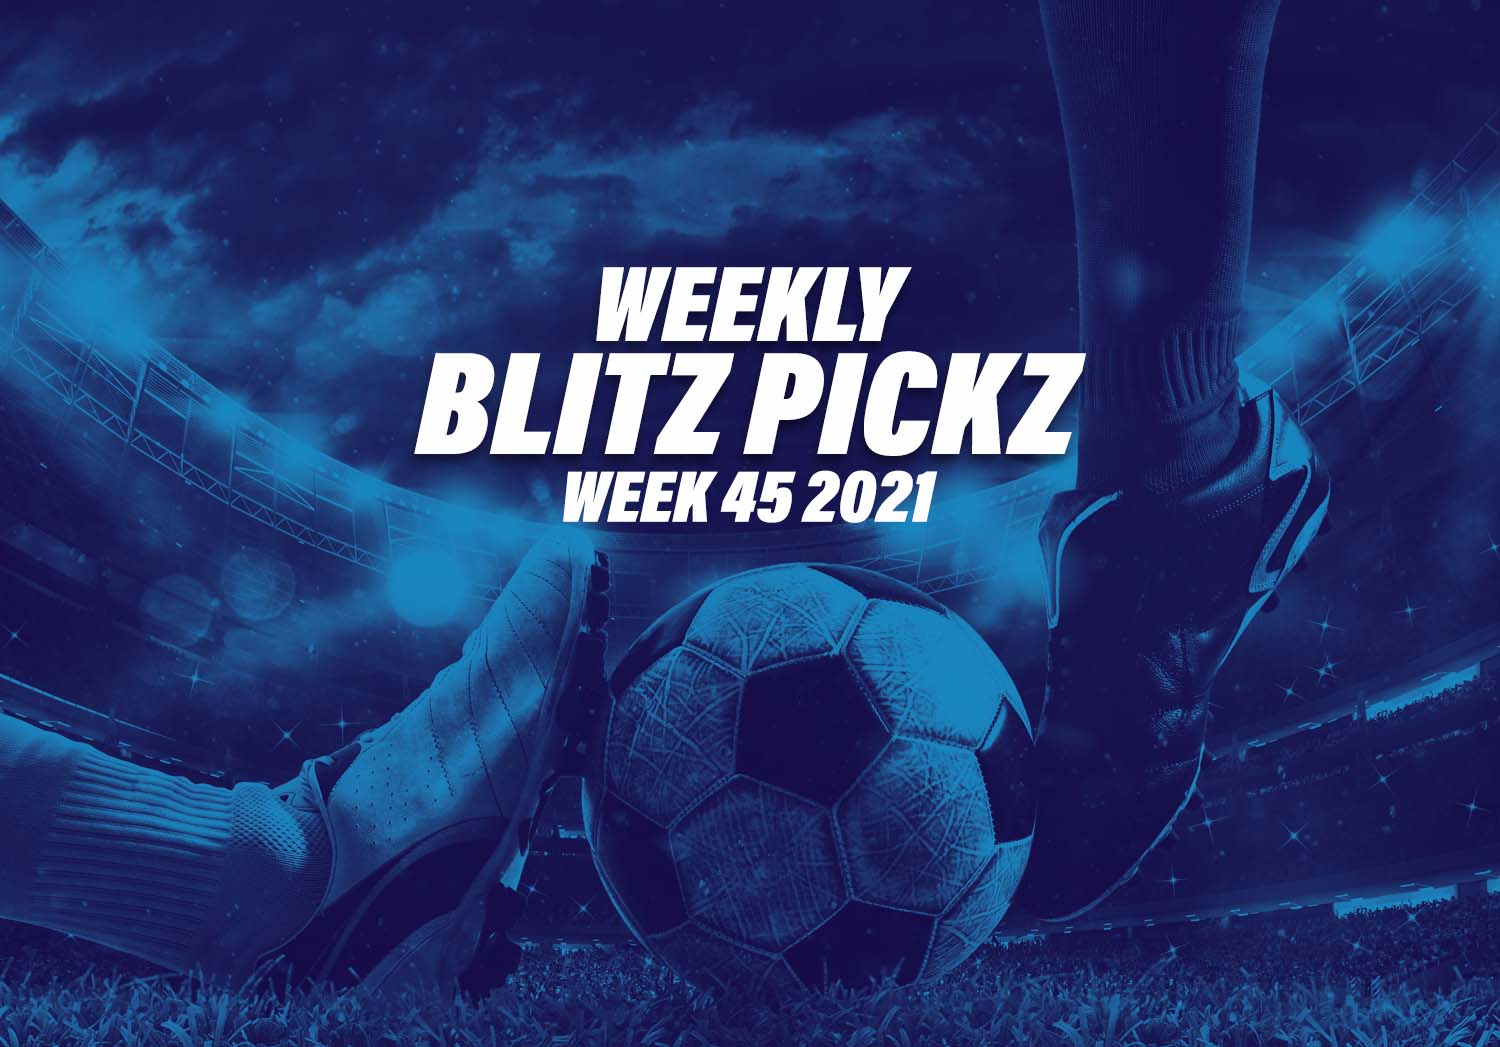 Blitz picks week 45 2021